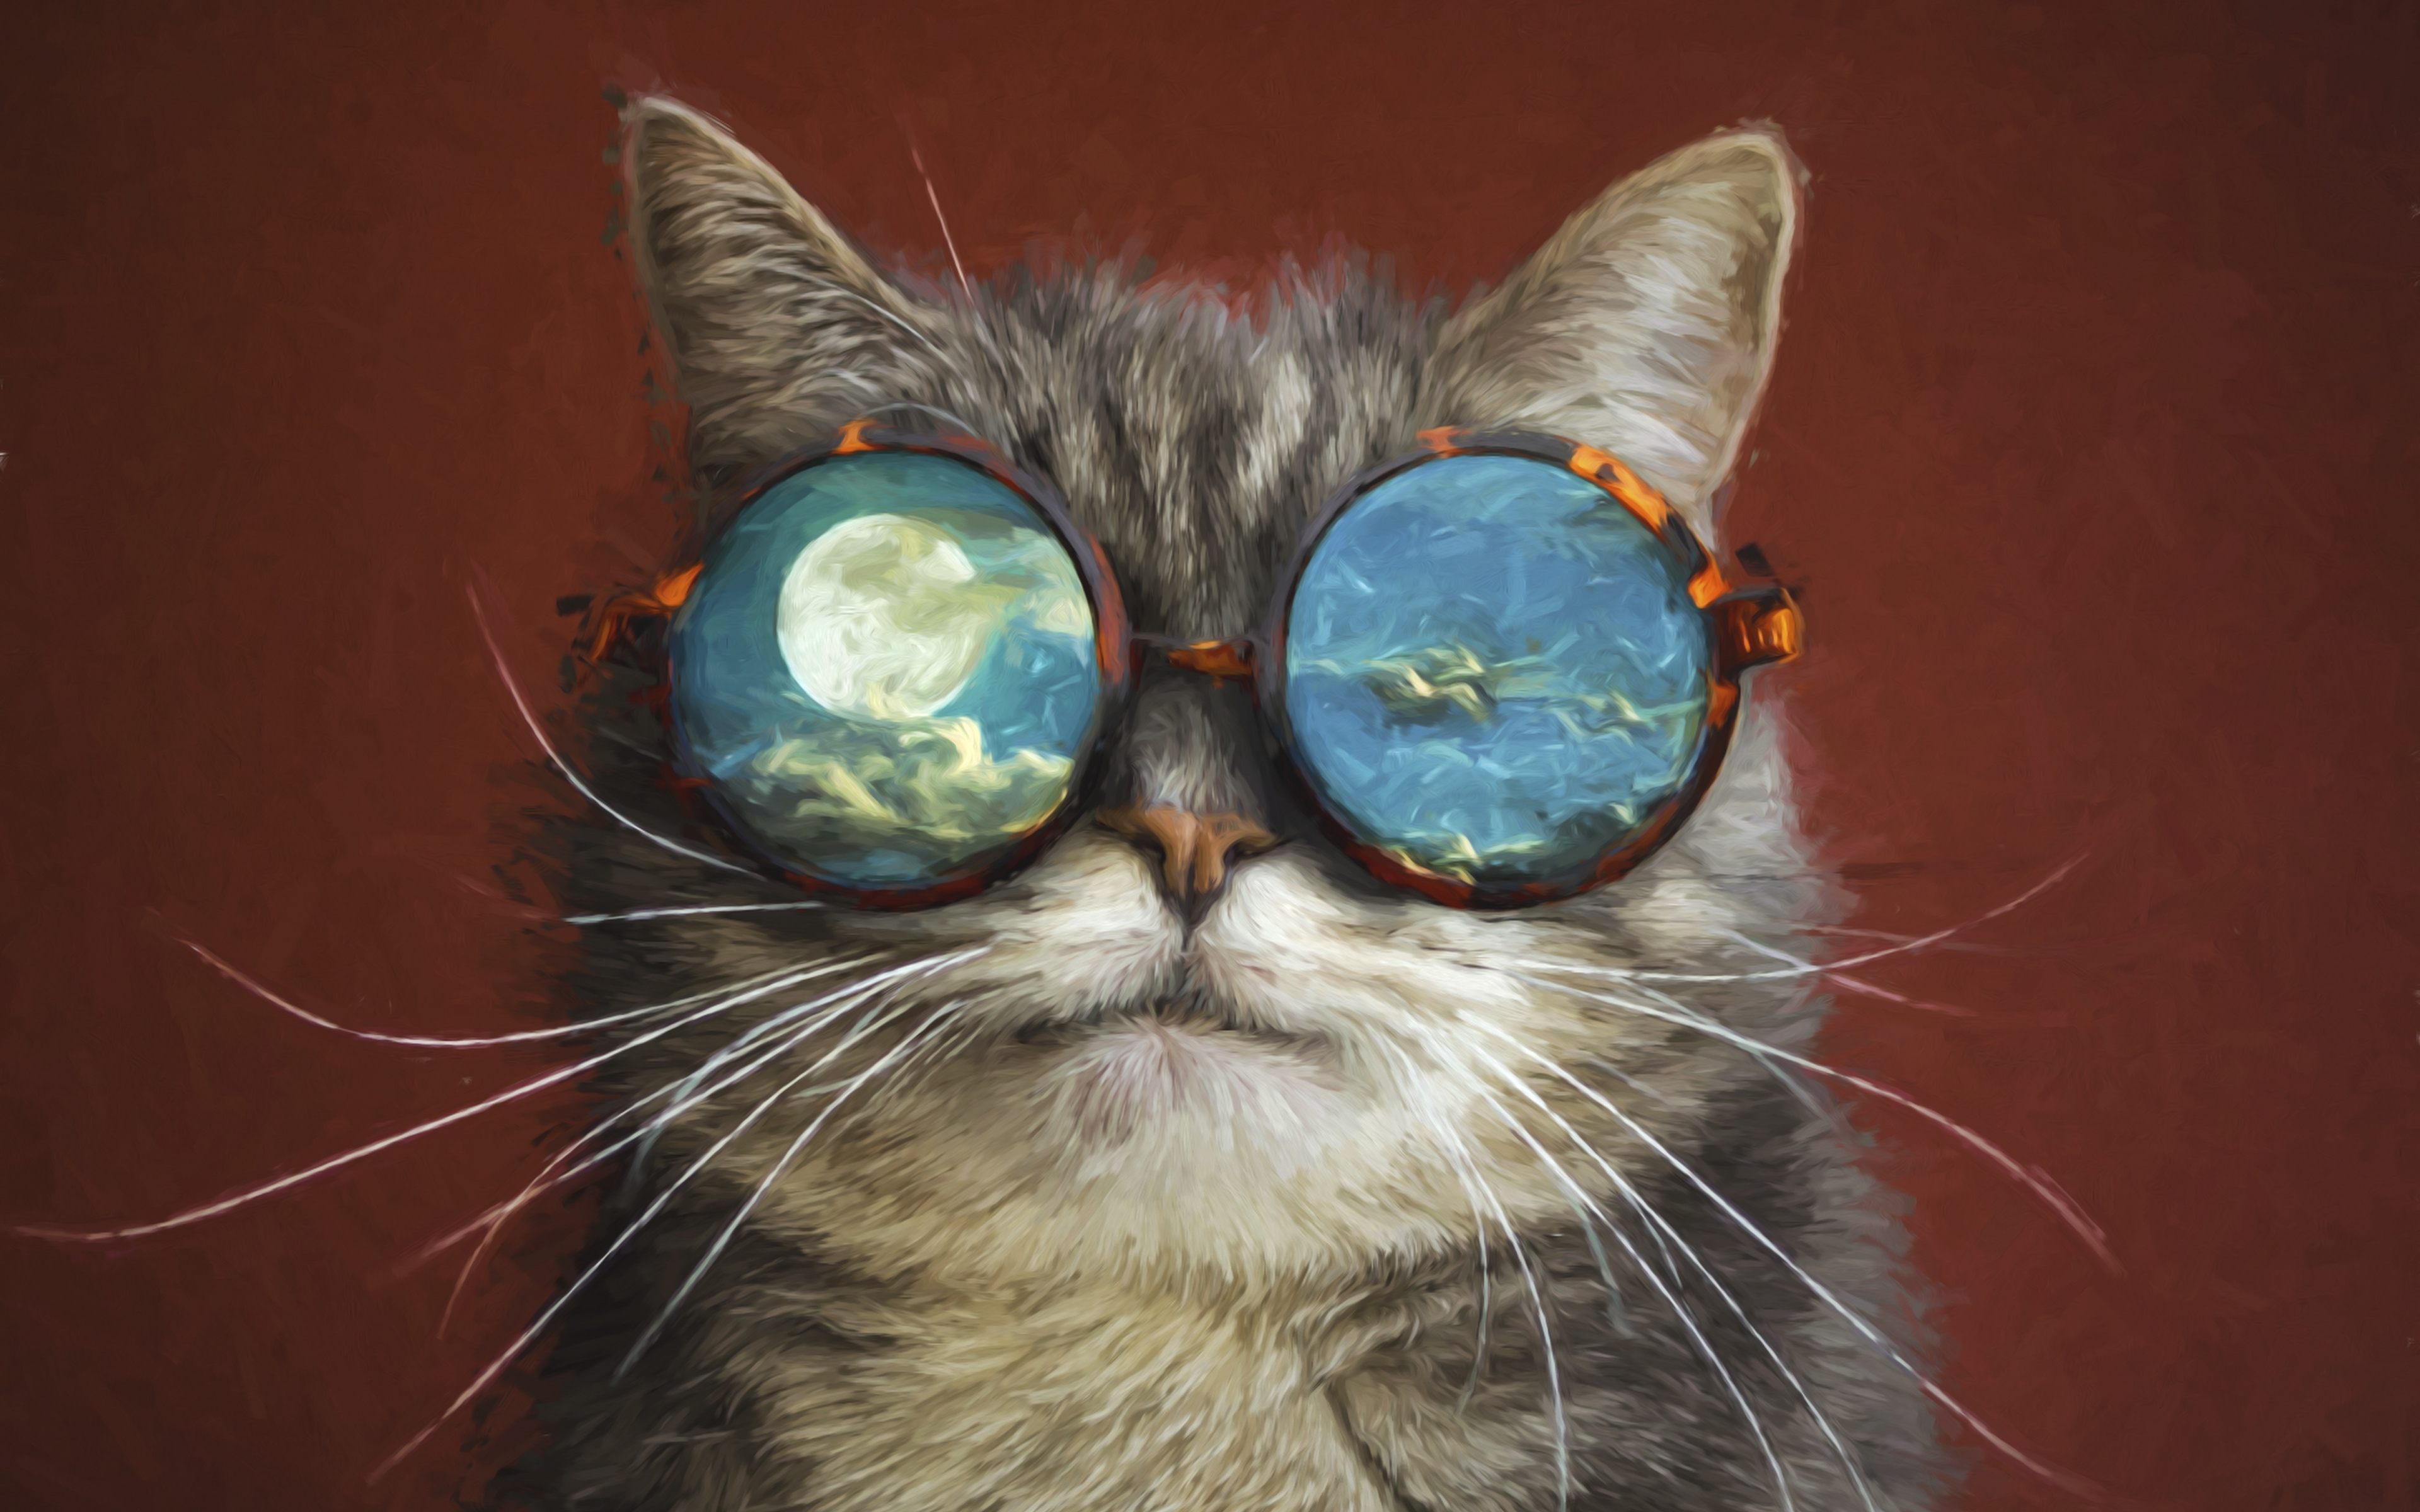 Download 3840x2400 Wallpaper  Funny Sunglasses  Cat  s 